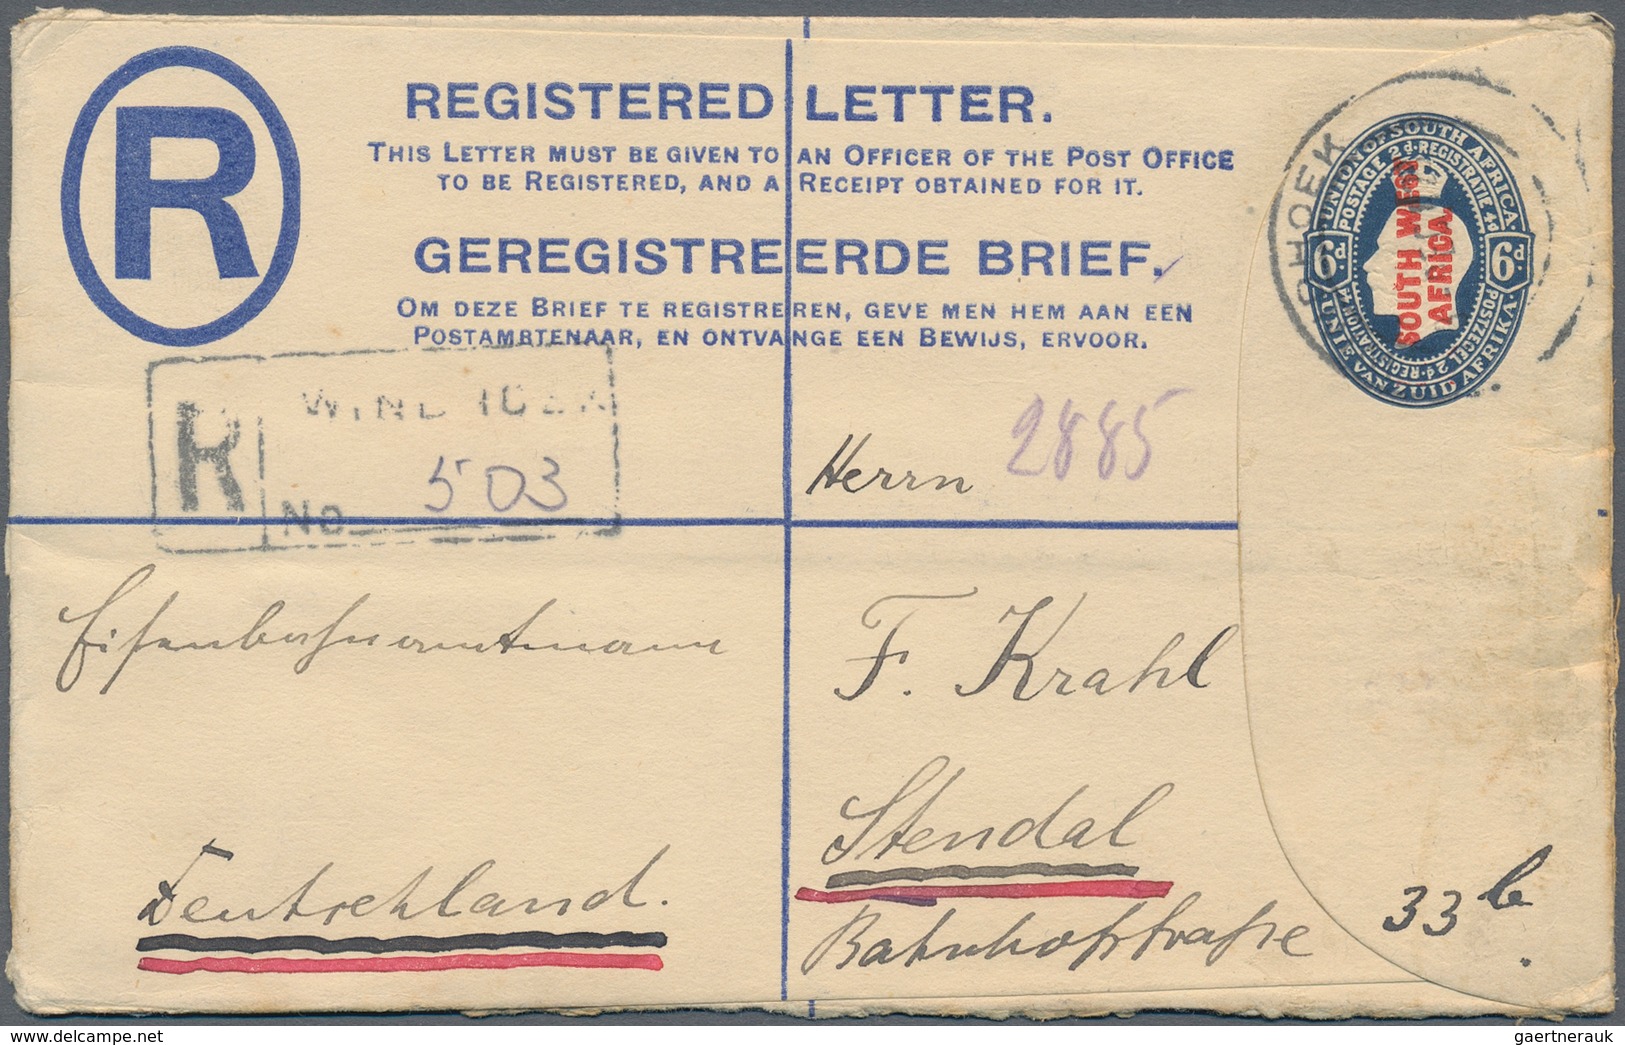 Südwestafrika: 1923/1928, 15 used registered letter stationary envelopes (Higgins & Gage ex no. 3/11